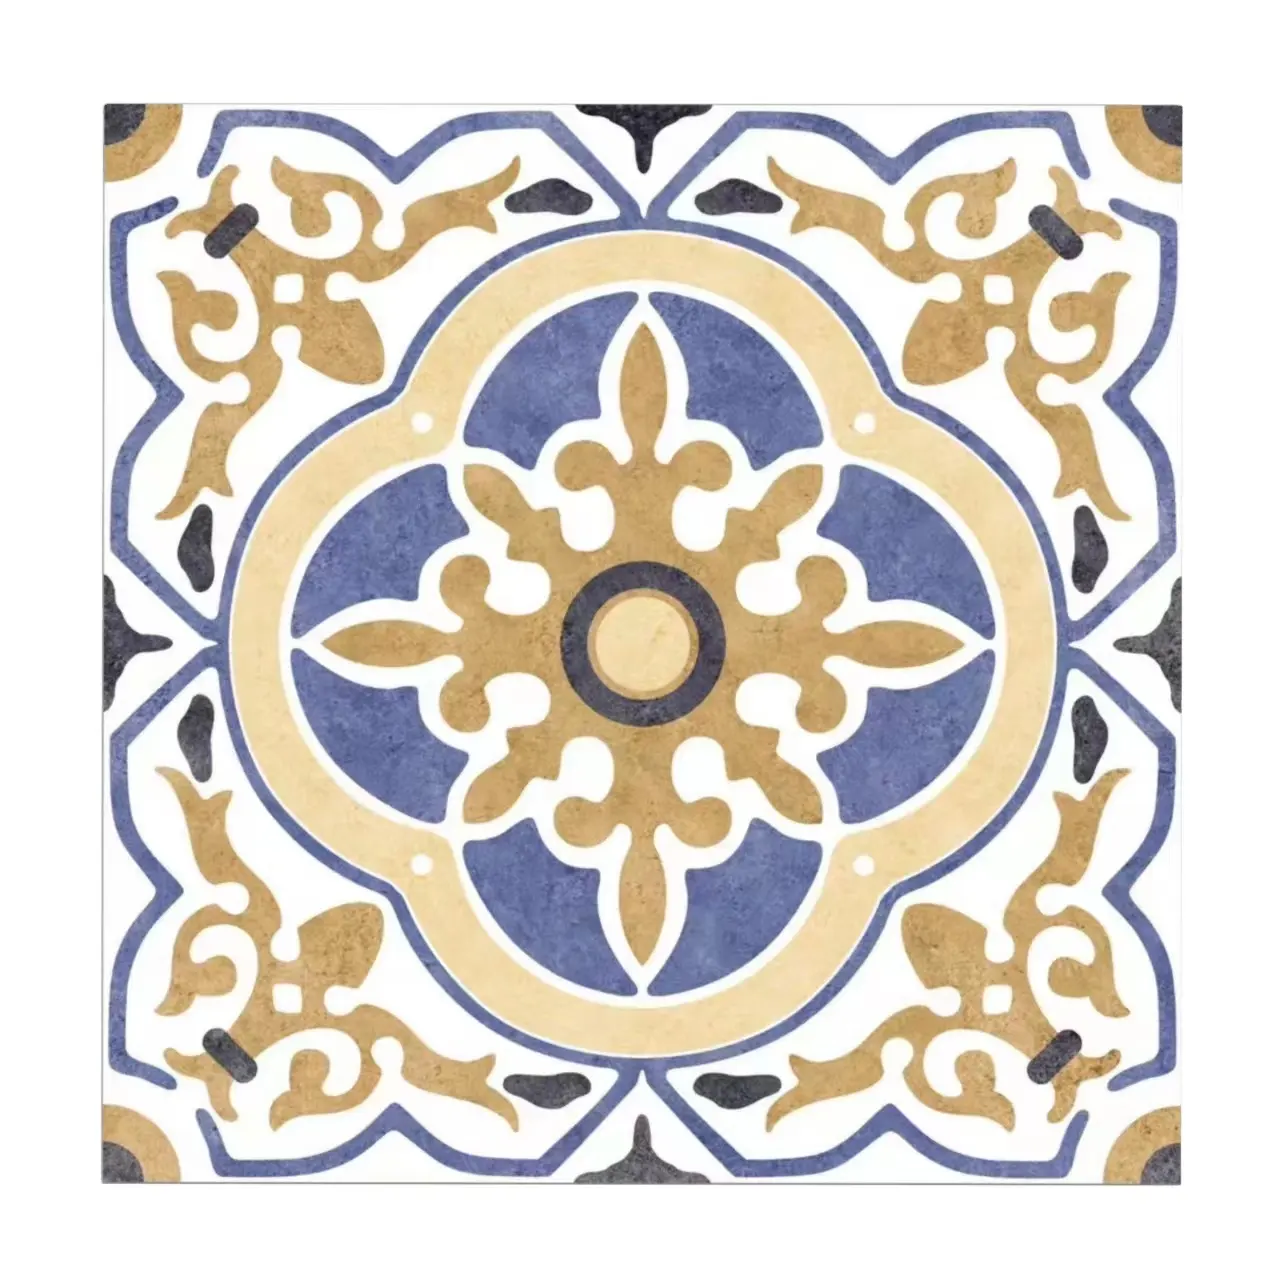 공장 사용자 정의 유럽 디자인 스타일 도자기 부엌 바닥 장식 패턴 타일 꽃 프랑스어 패턴 타일